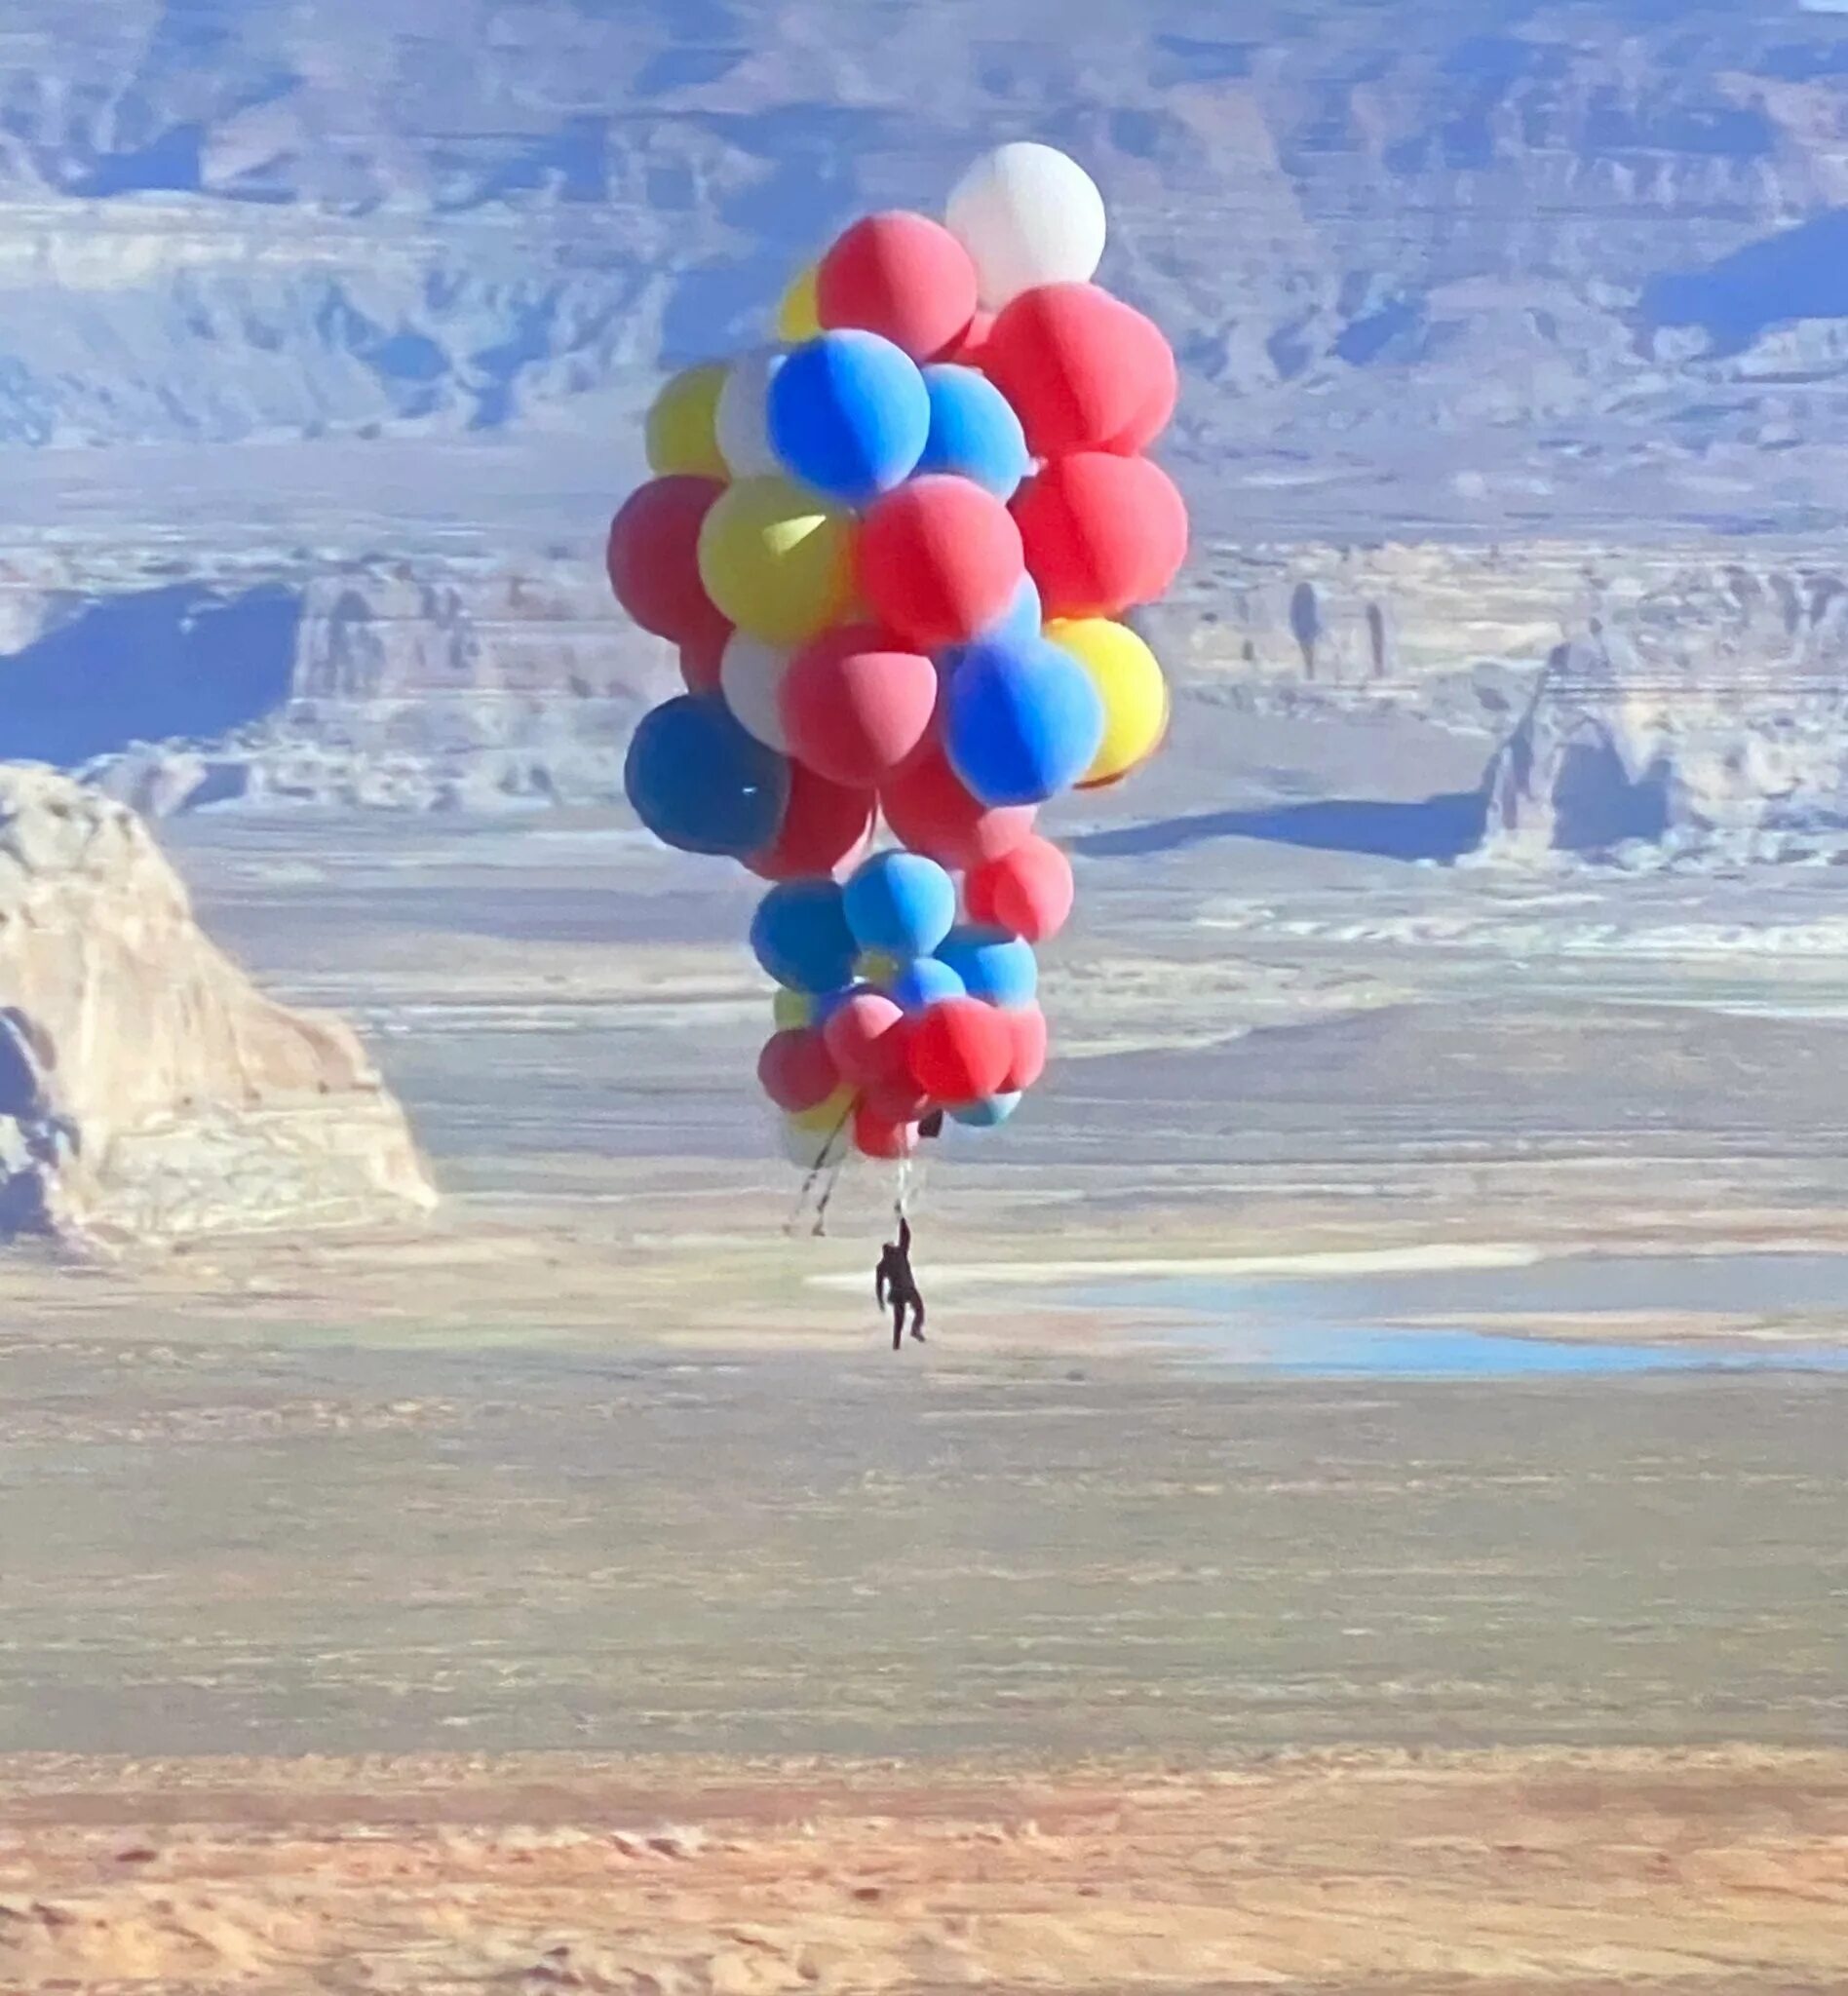 Floating over. Дэвид Блейн на воздушных шарах. Полет на воздушных шариках. Воздушные шары взлетают. Воздушные шары полет.